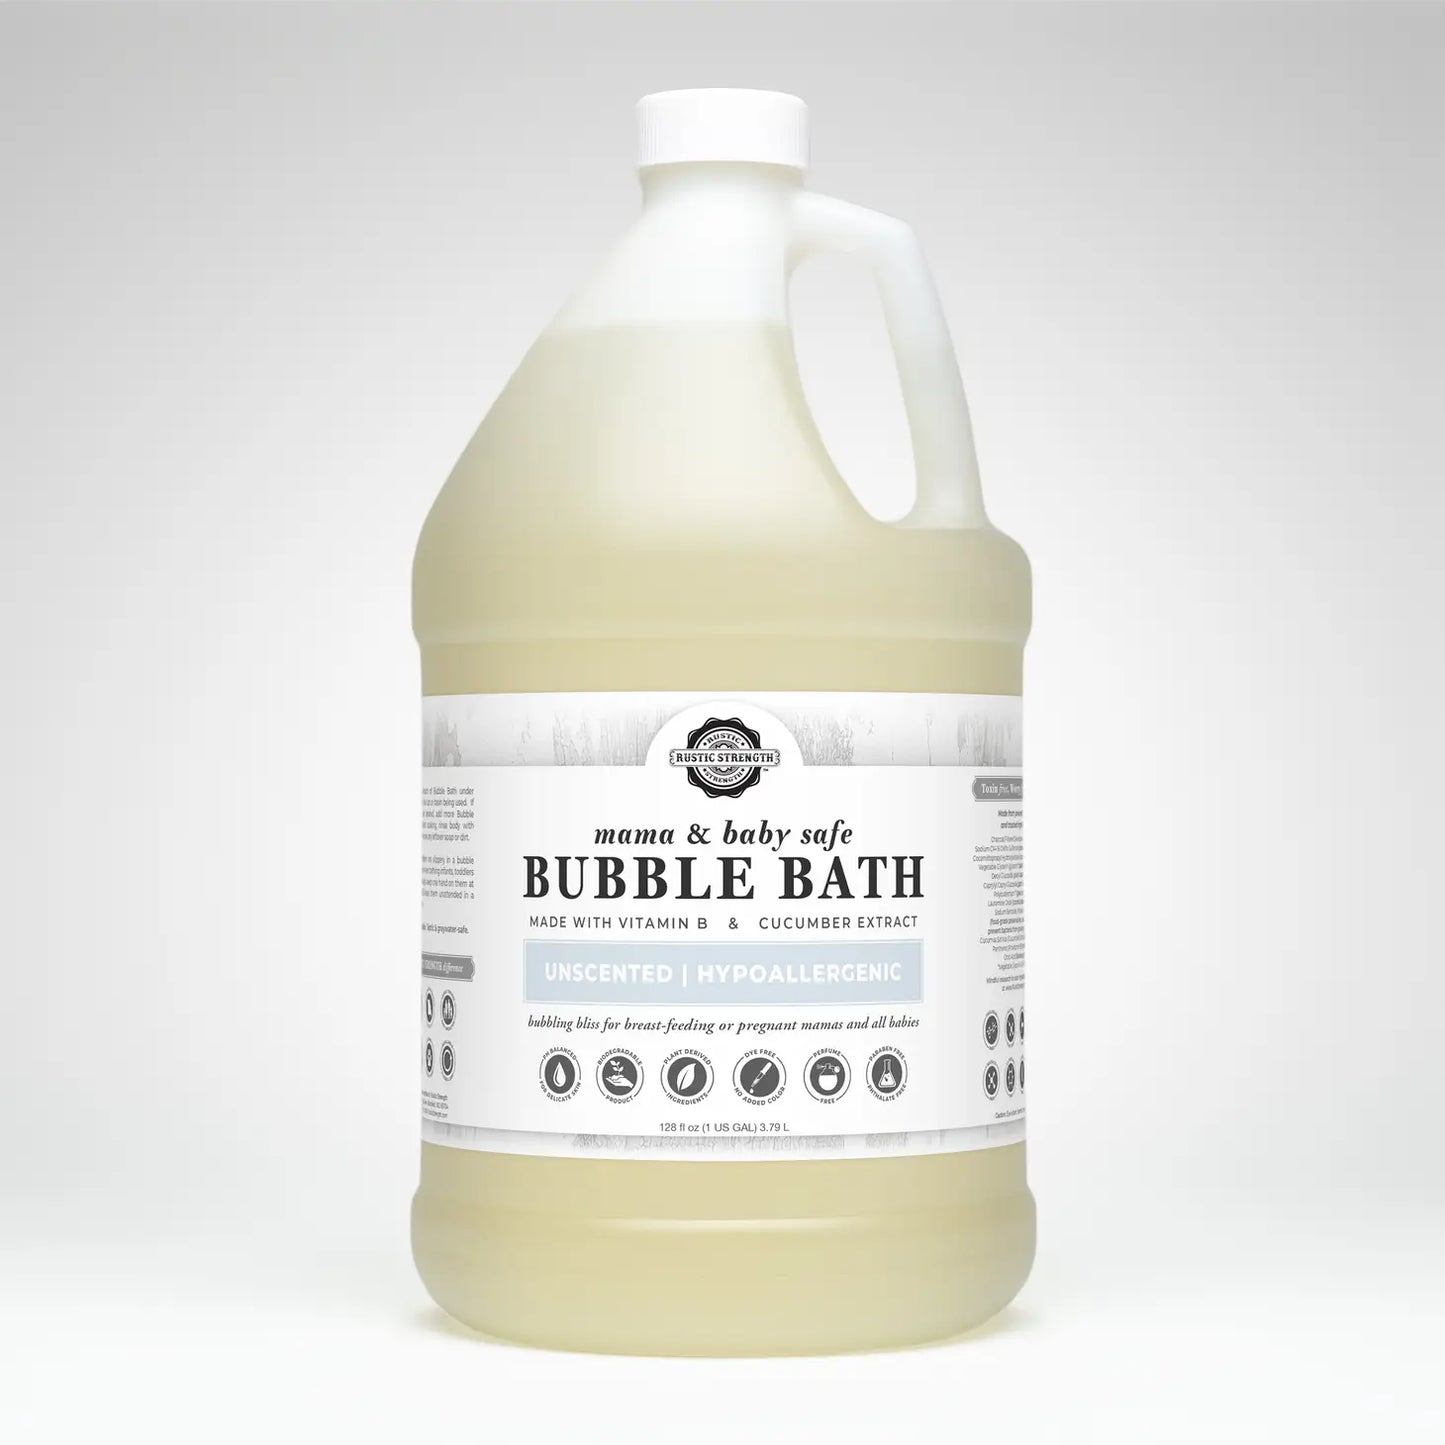 Sulfate-Free Bubble Bath For Sensitive Skin - OZ